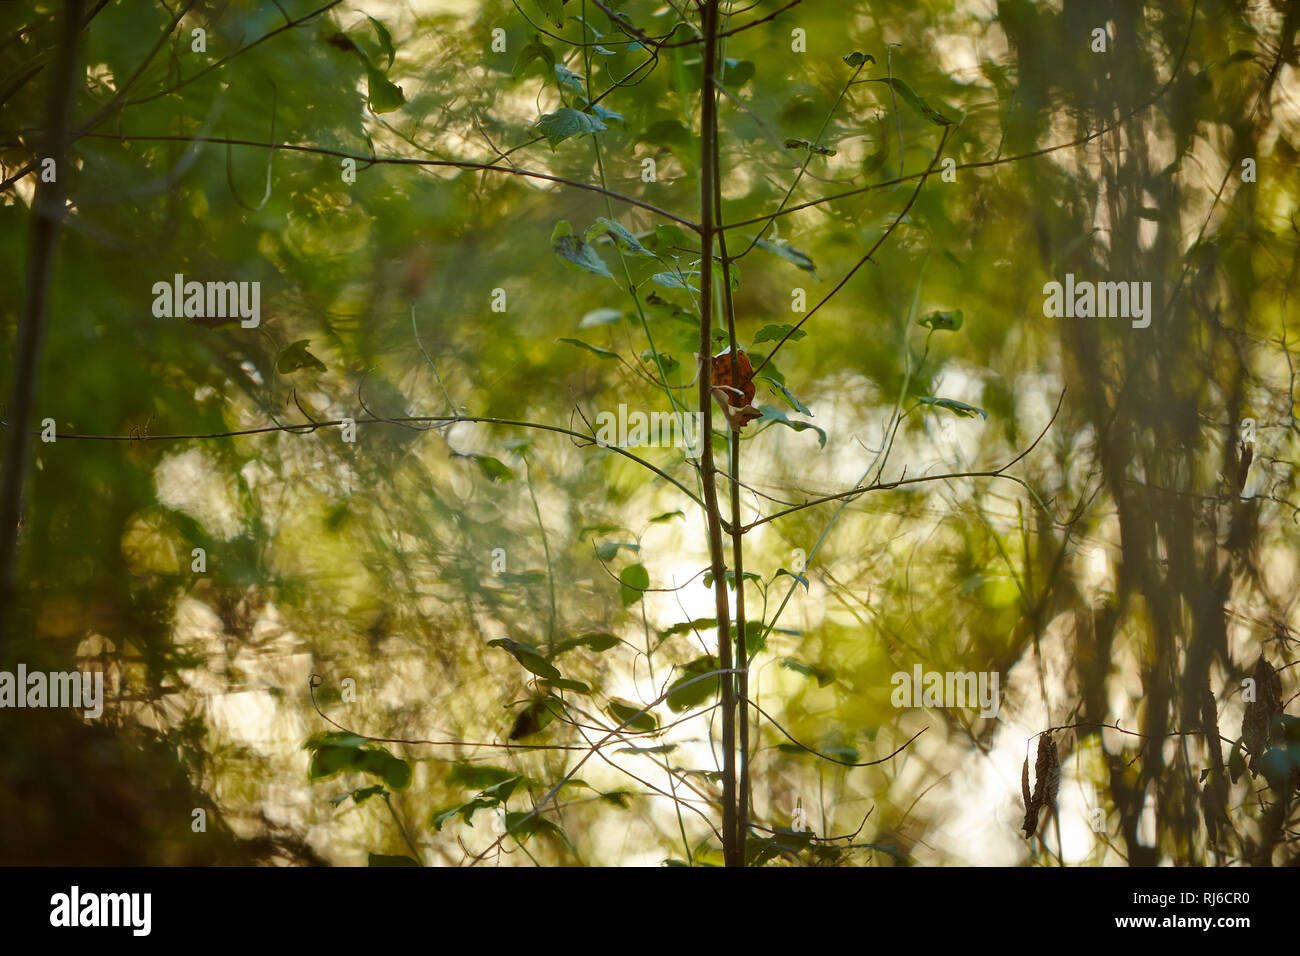 Blätter und Äste im Sonnenlicht, Hintergrund unscharf Foto Stock